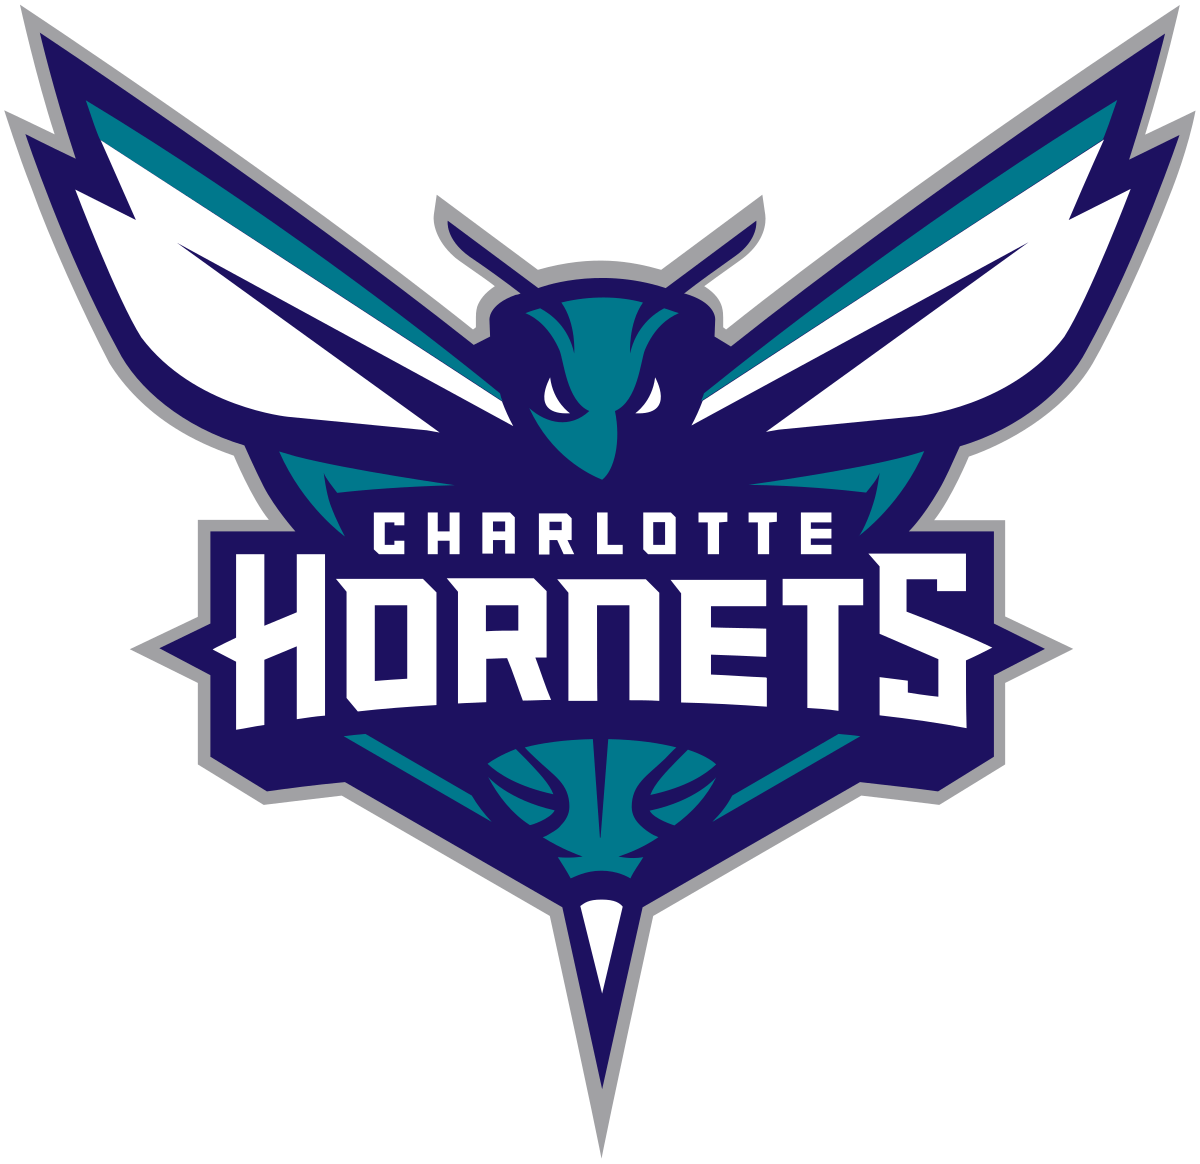 Best Basketball Logo - Charlotte Hornets